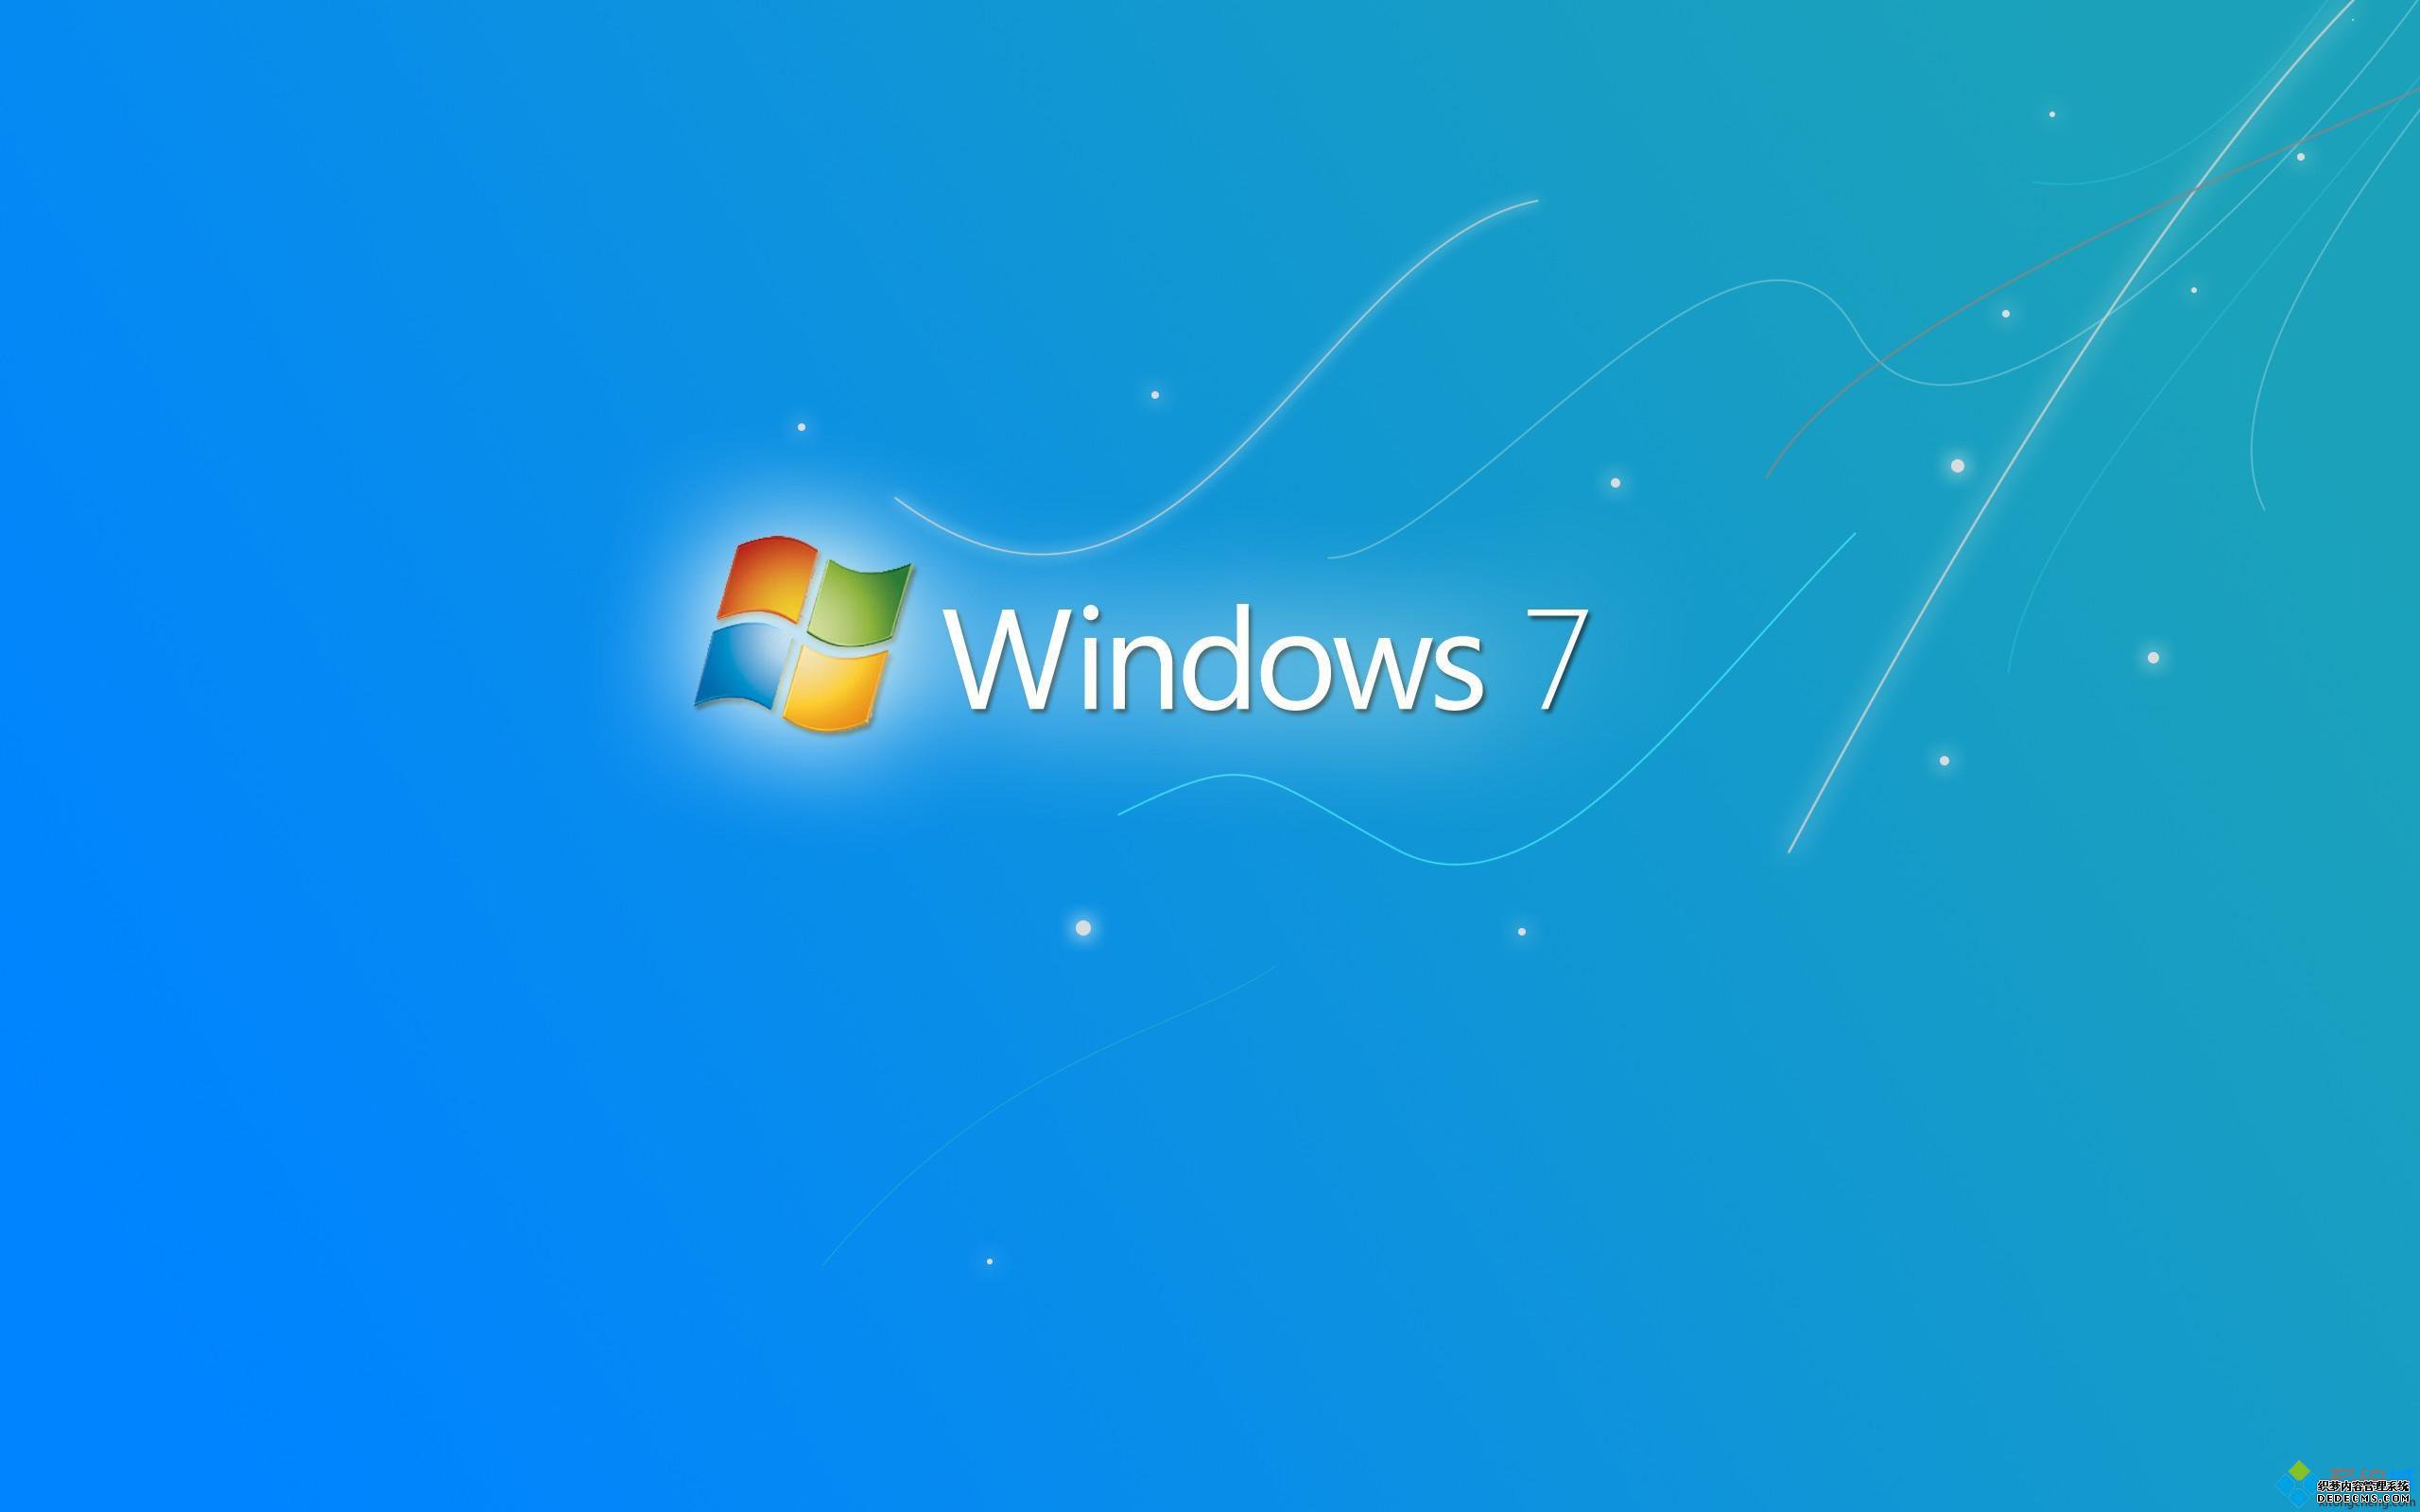 Windows7 专题壁纸1 - 1920x1200 壁纸下载 - Windows7 专题壁纸 - 系统壁纸 - V3壁纸站